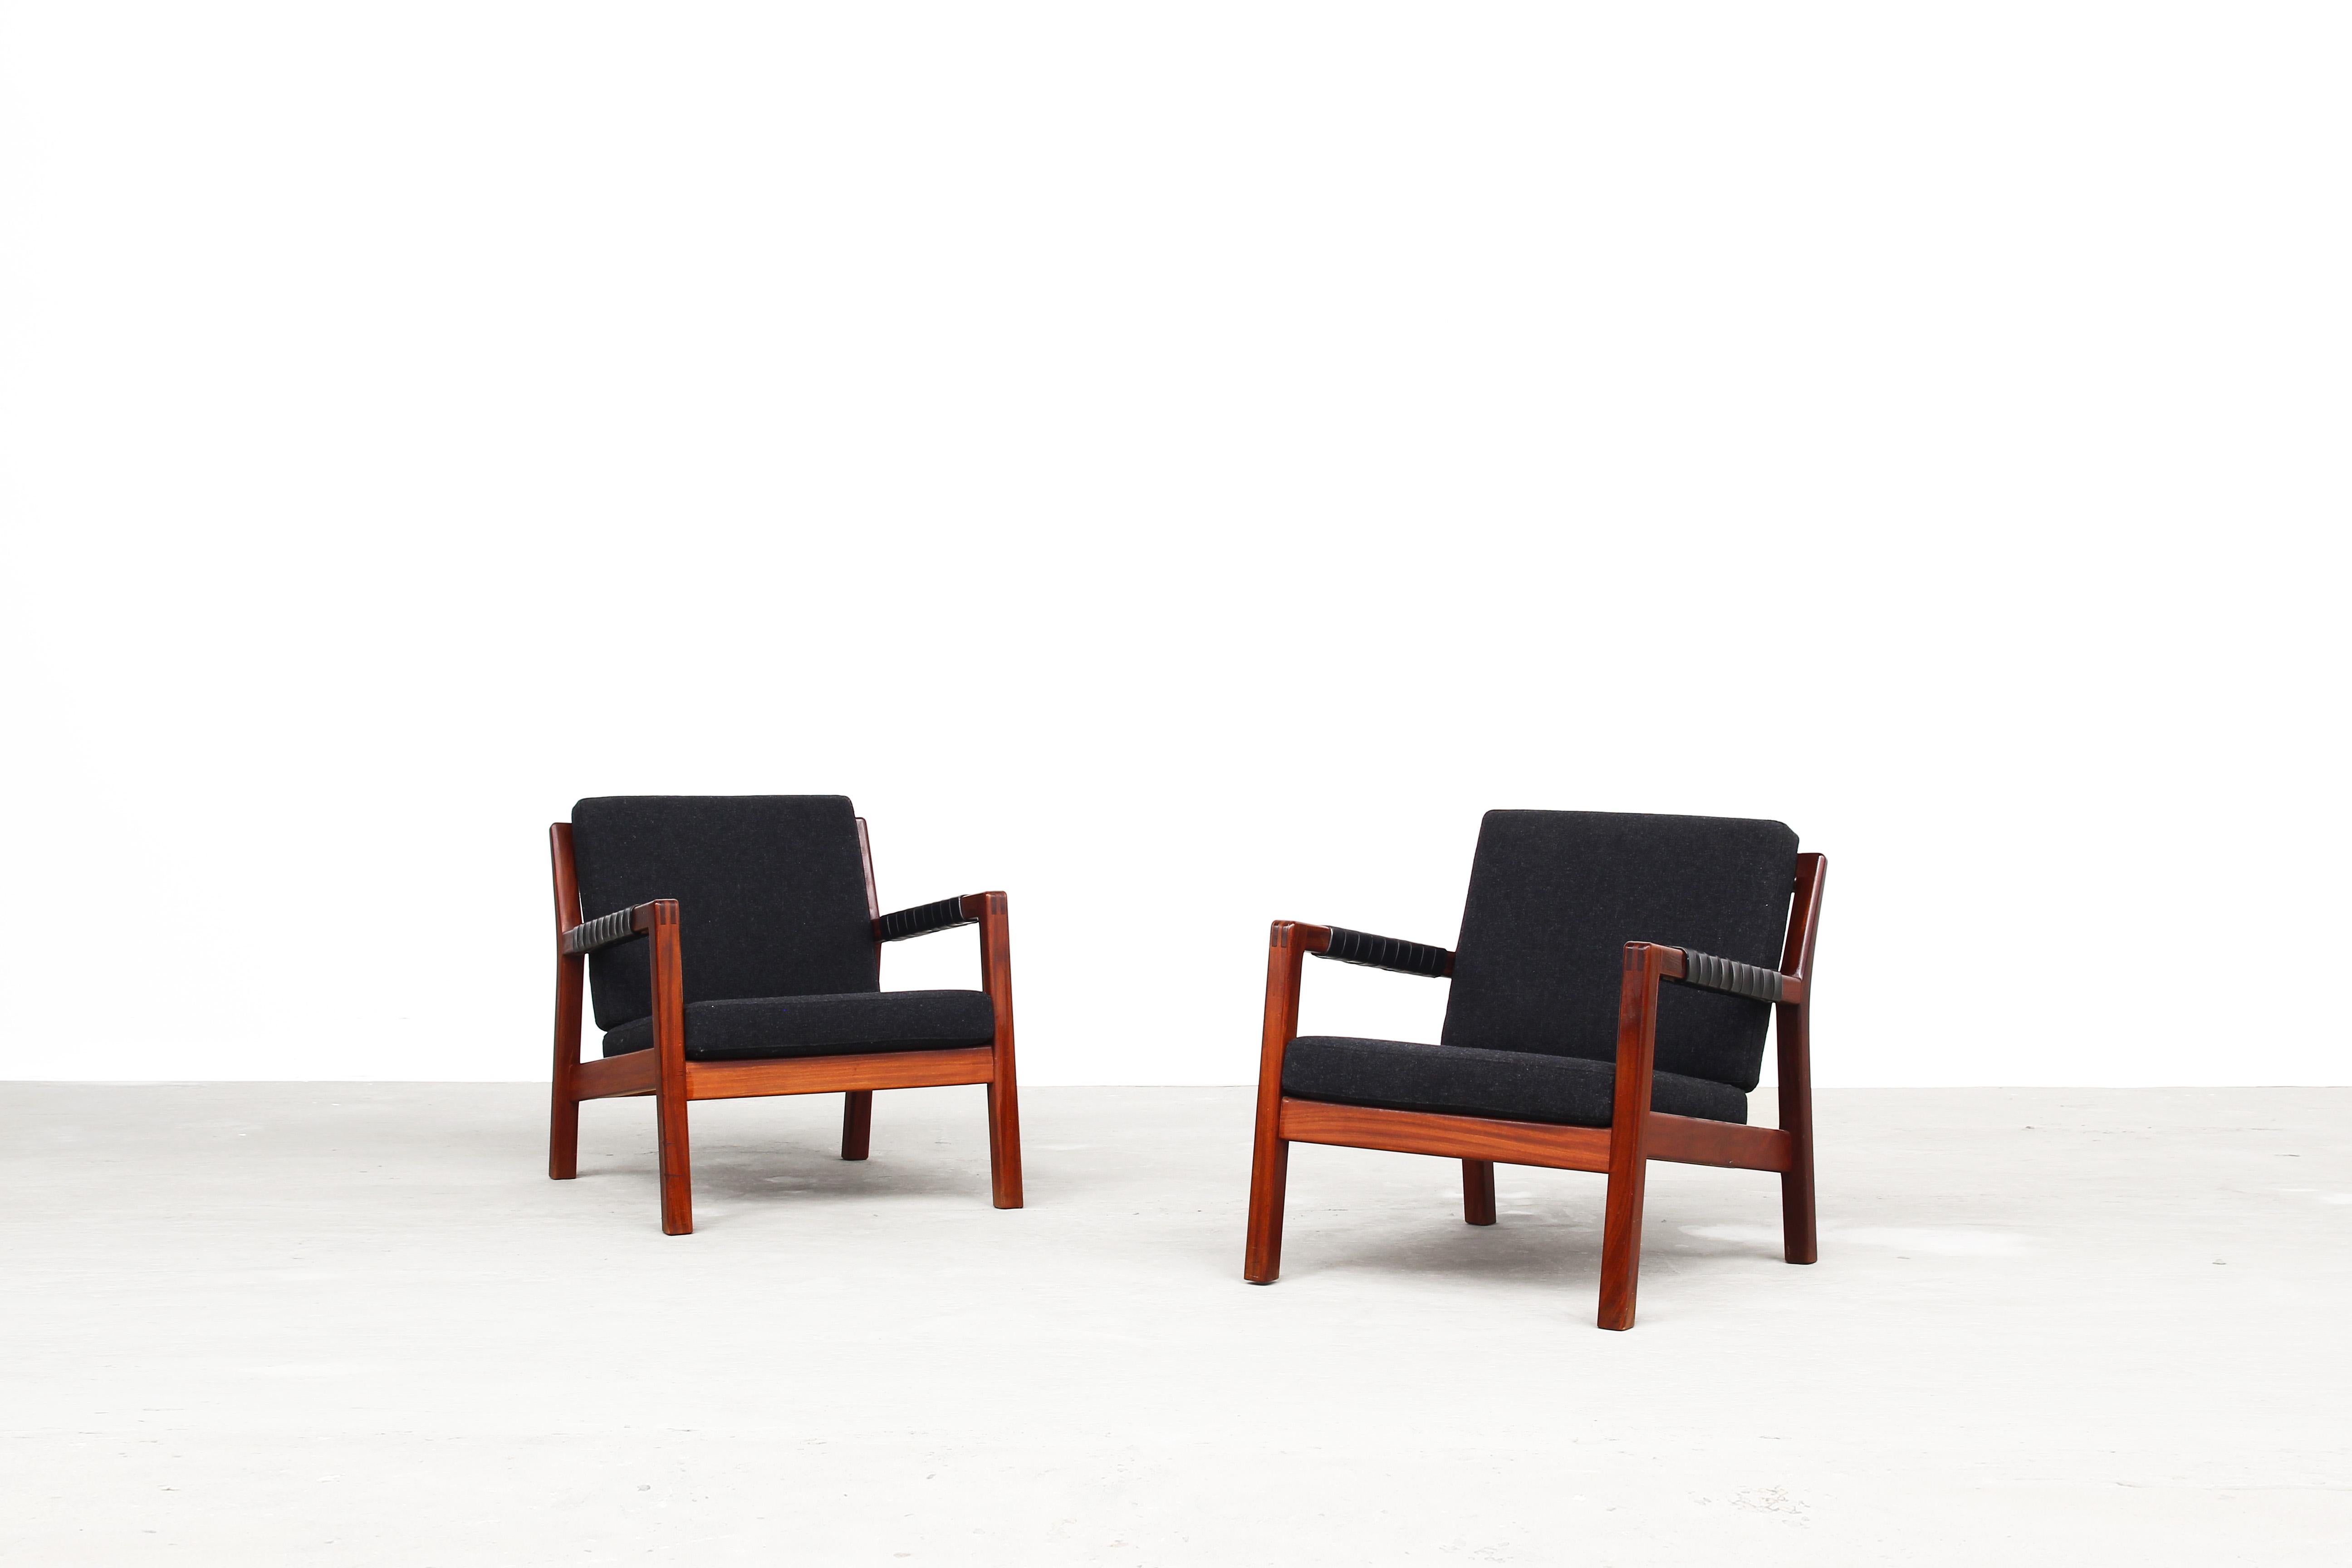 Sehr schönes Paar Loungesessel von Carl Gustaf Hiort af Örnas, hergestellt in Finnland in den 1960er Jahren.
Beide Stühle sind in einem sehr guten Zustand, das Ledergeflecht ist noch in einem sehr guten Zustand und die Kissen wurden neu gepolstert